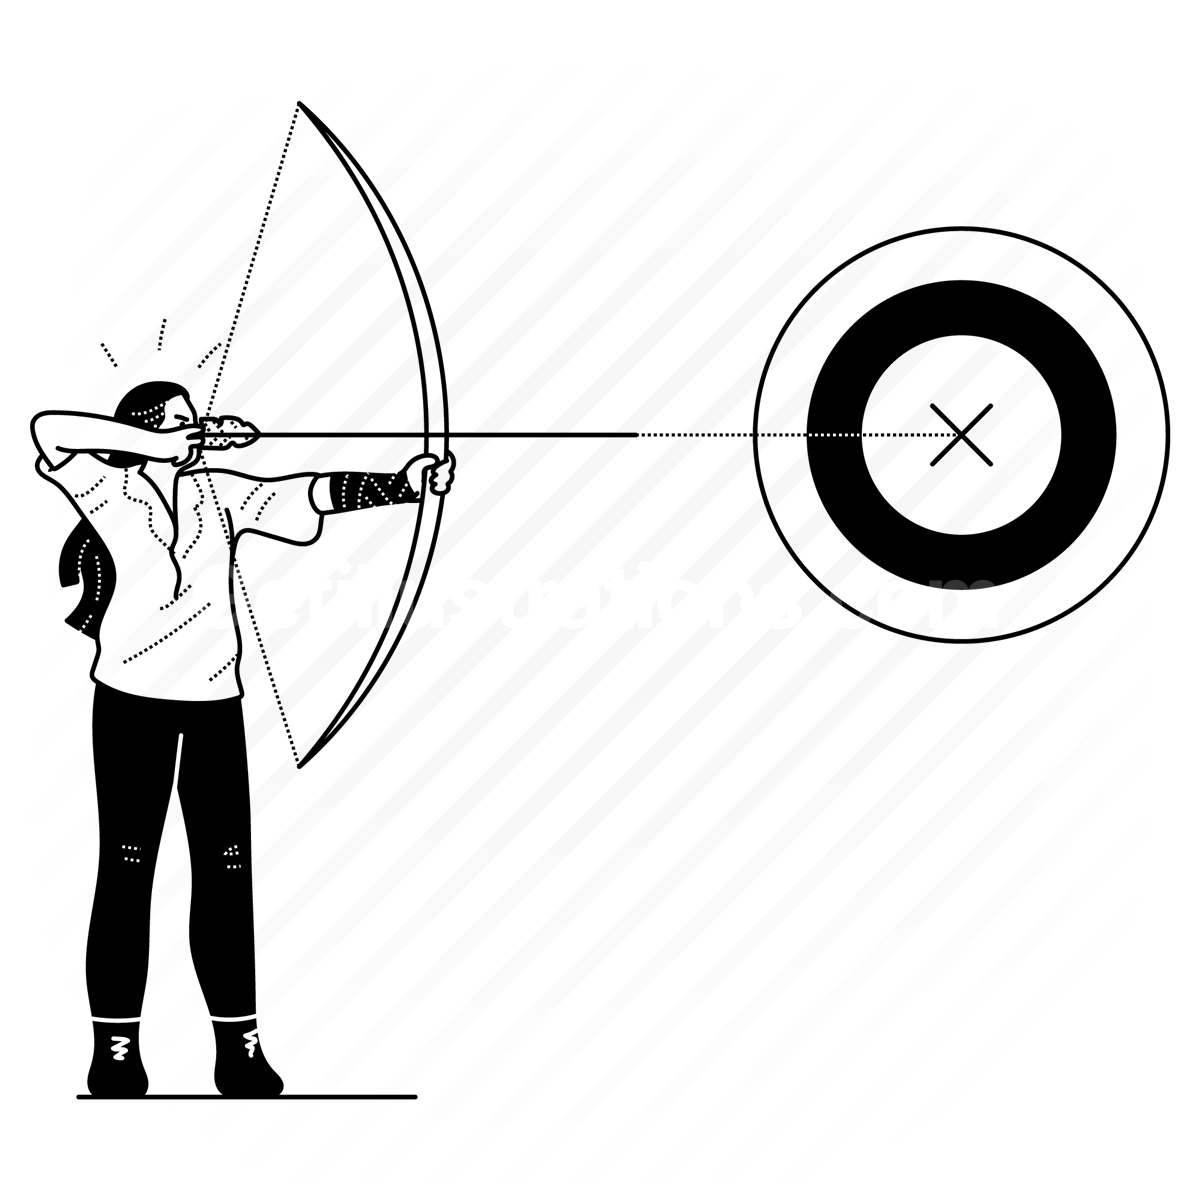 archery, bow, arrow, target, aim, outdoors, activity, sport